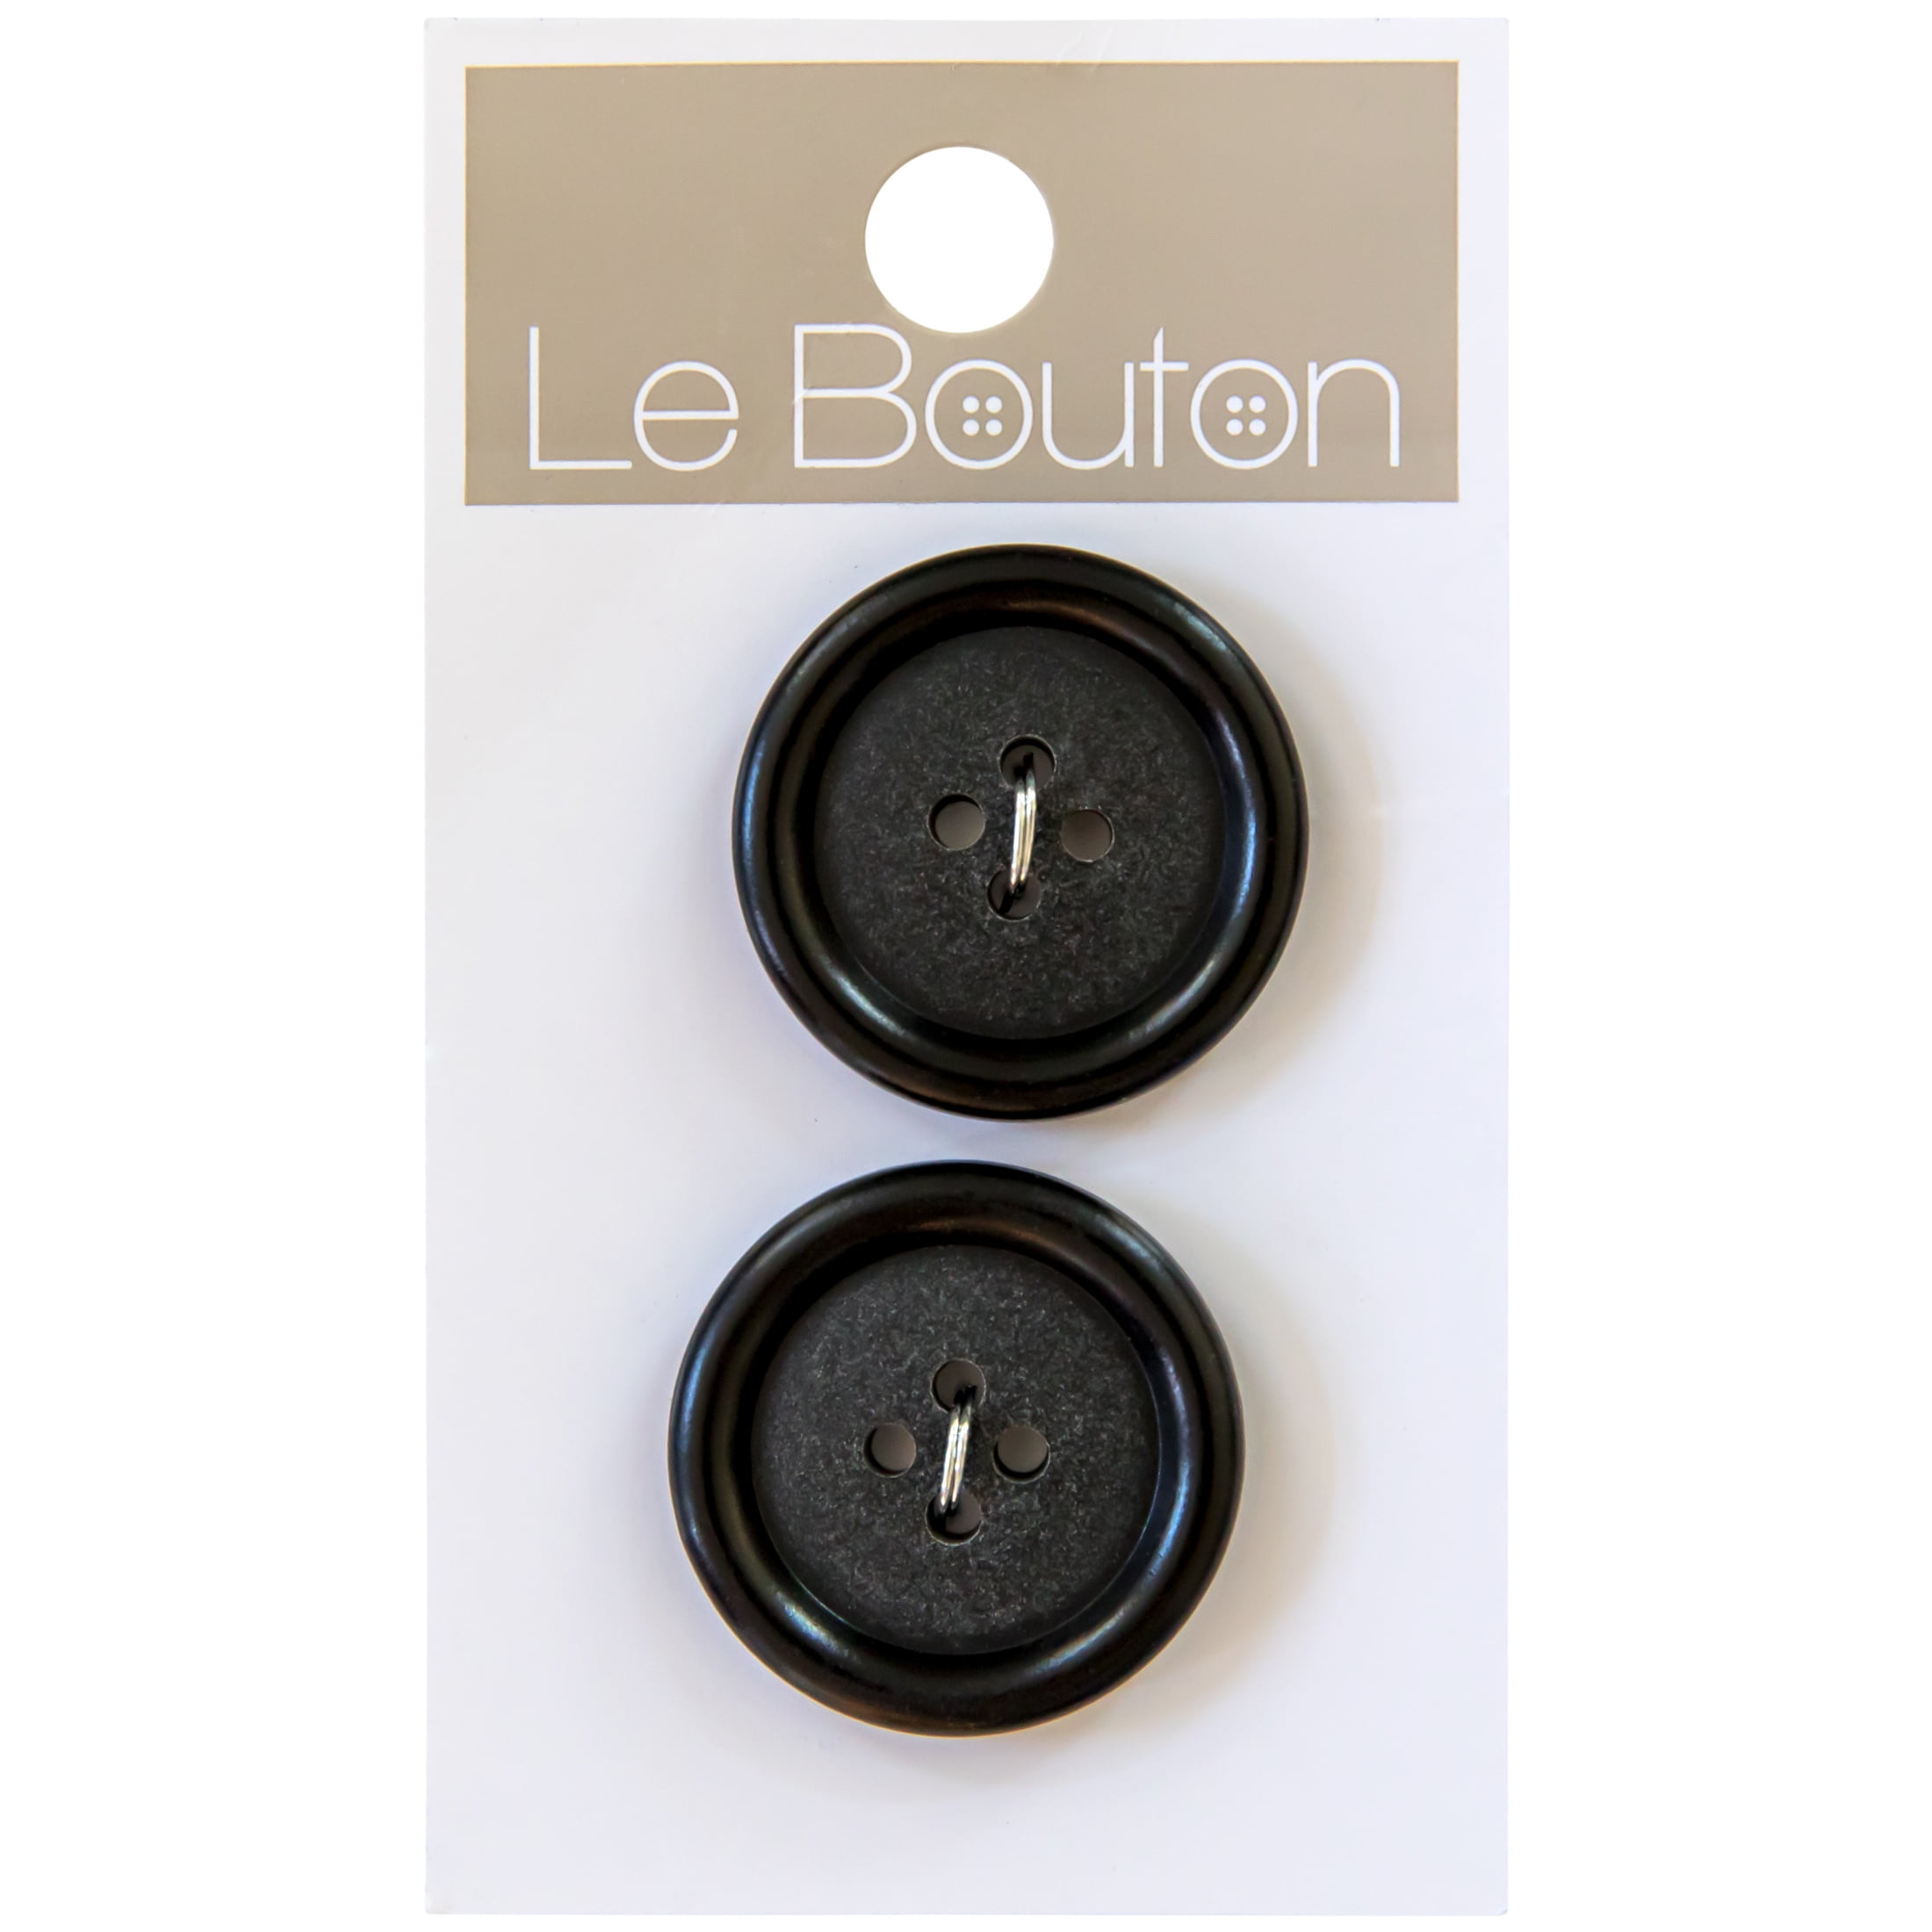 Le Bouton Black 1" 4-Hole Buttons, 2 Pieces